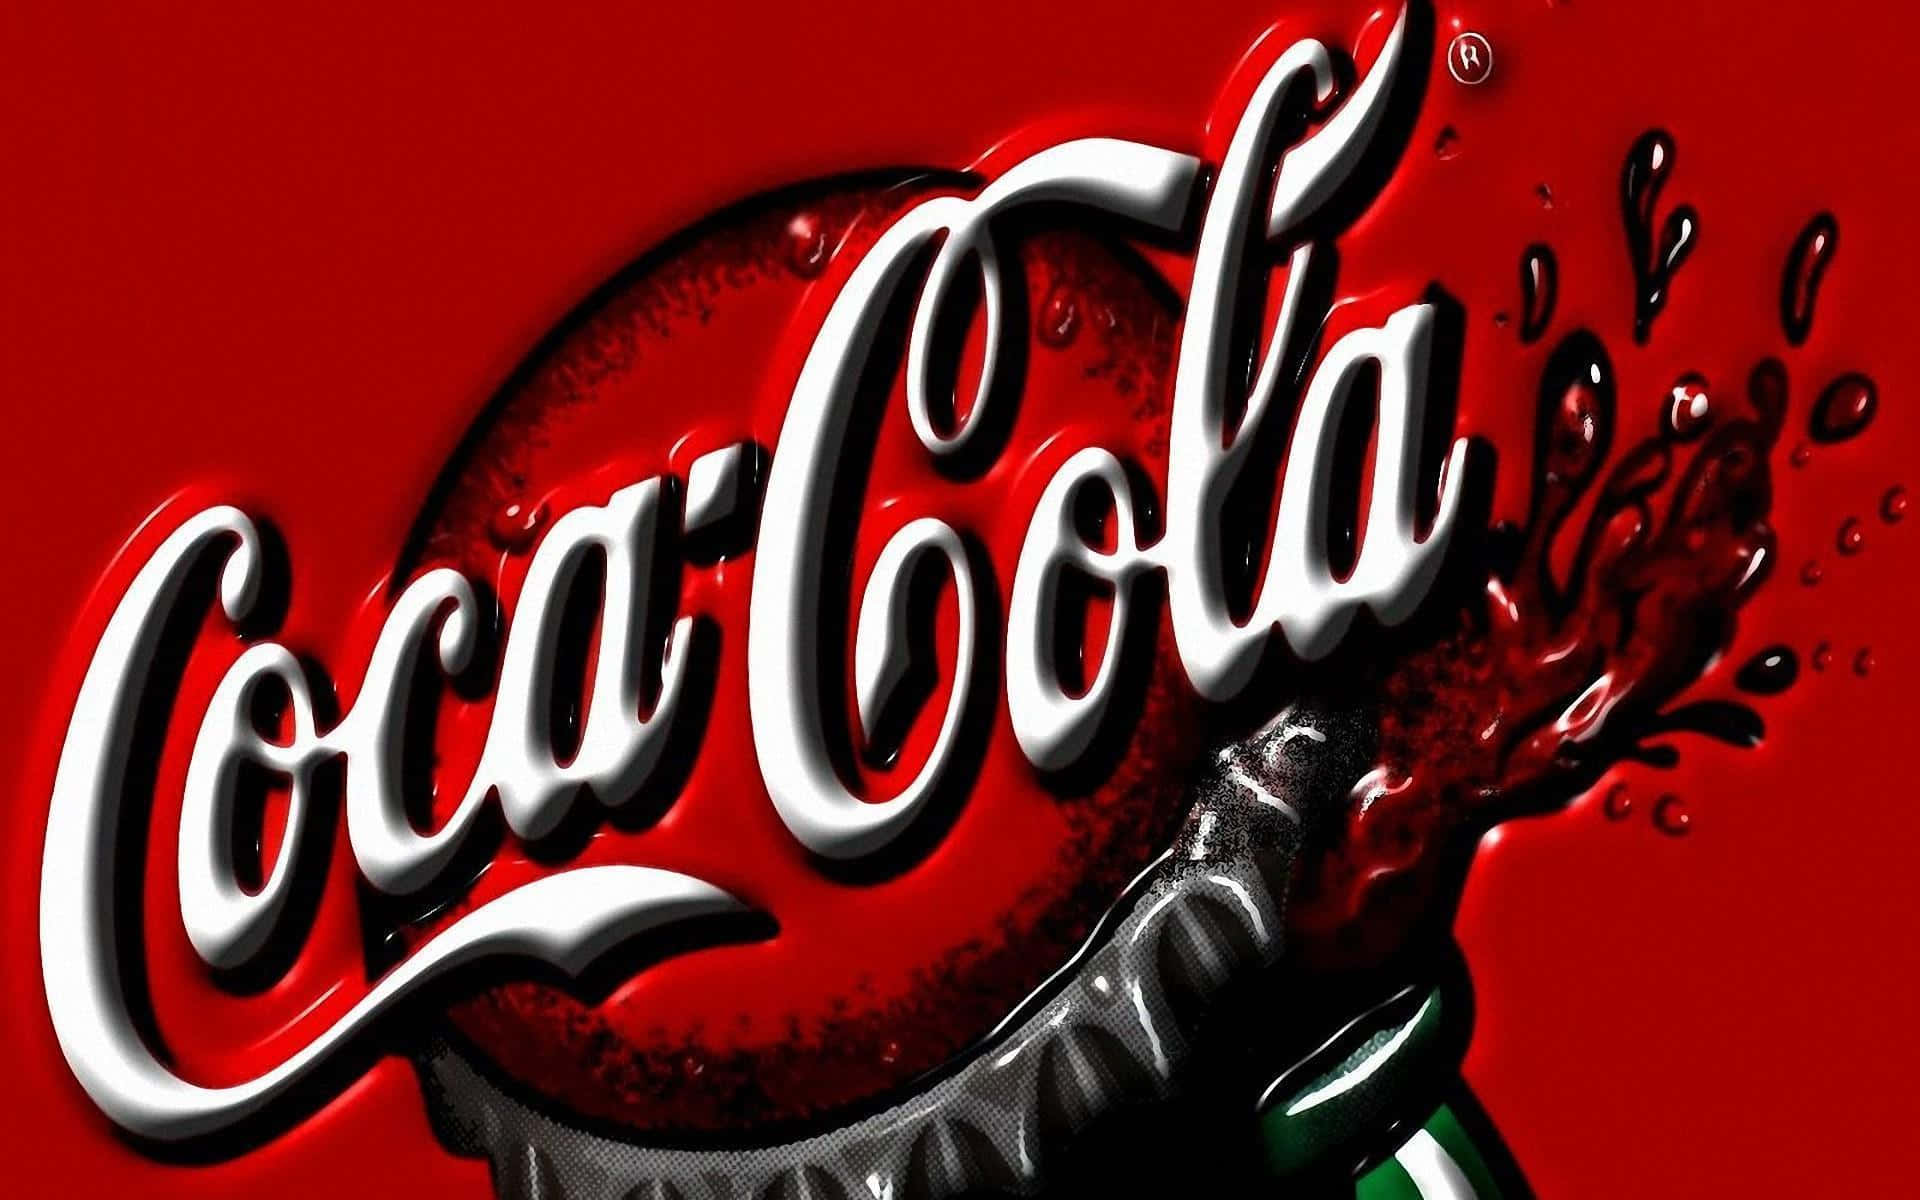 Njutav Den Uppfriskande Smaken Av Coca-cola!